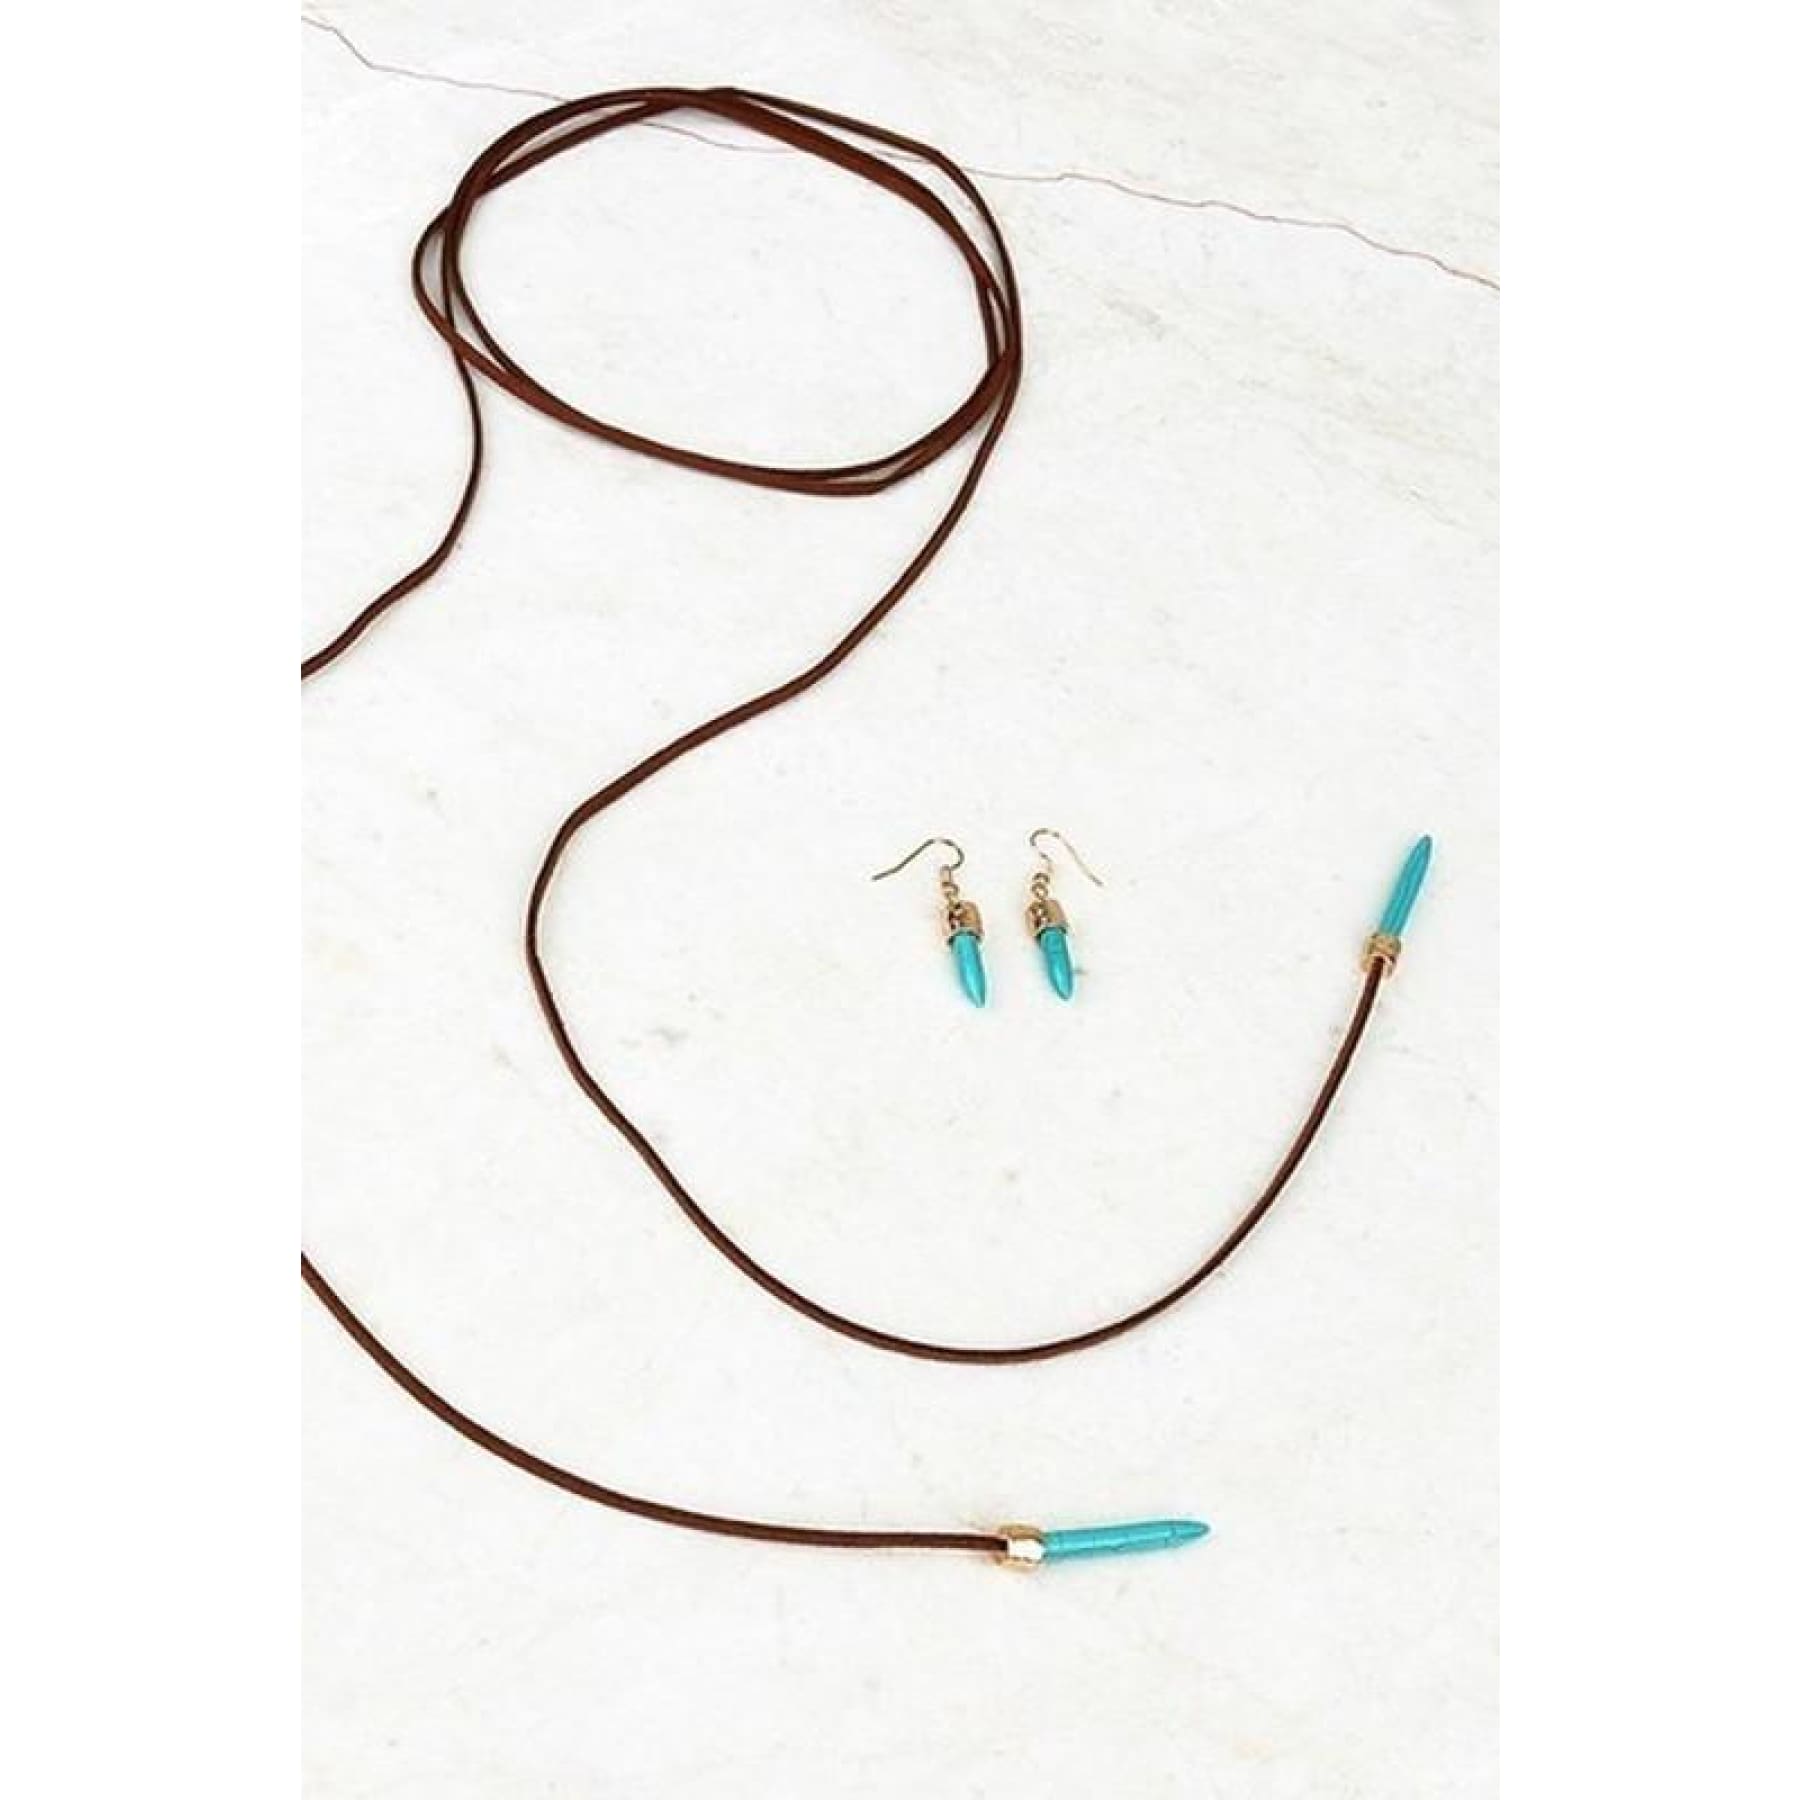 Sure Shot~ Suede and Turquoise Wrap Choker,Necklace - Dirt Road Divas Boutique